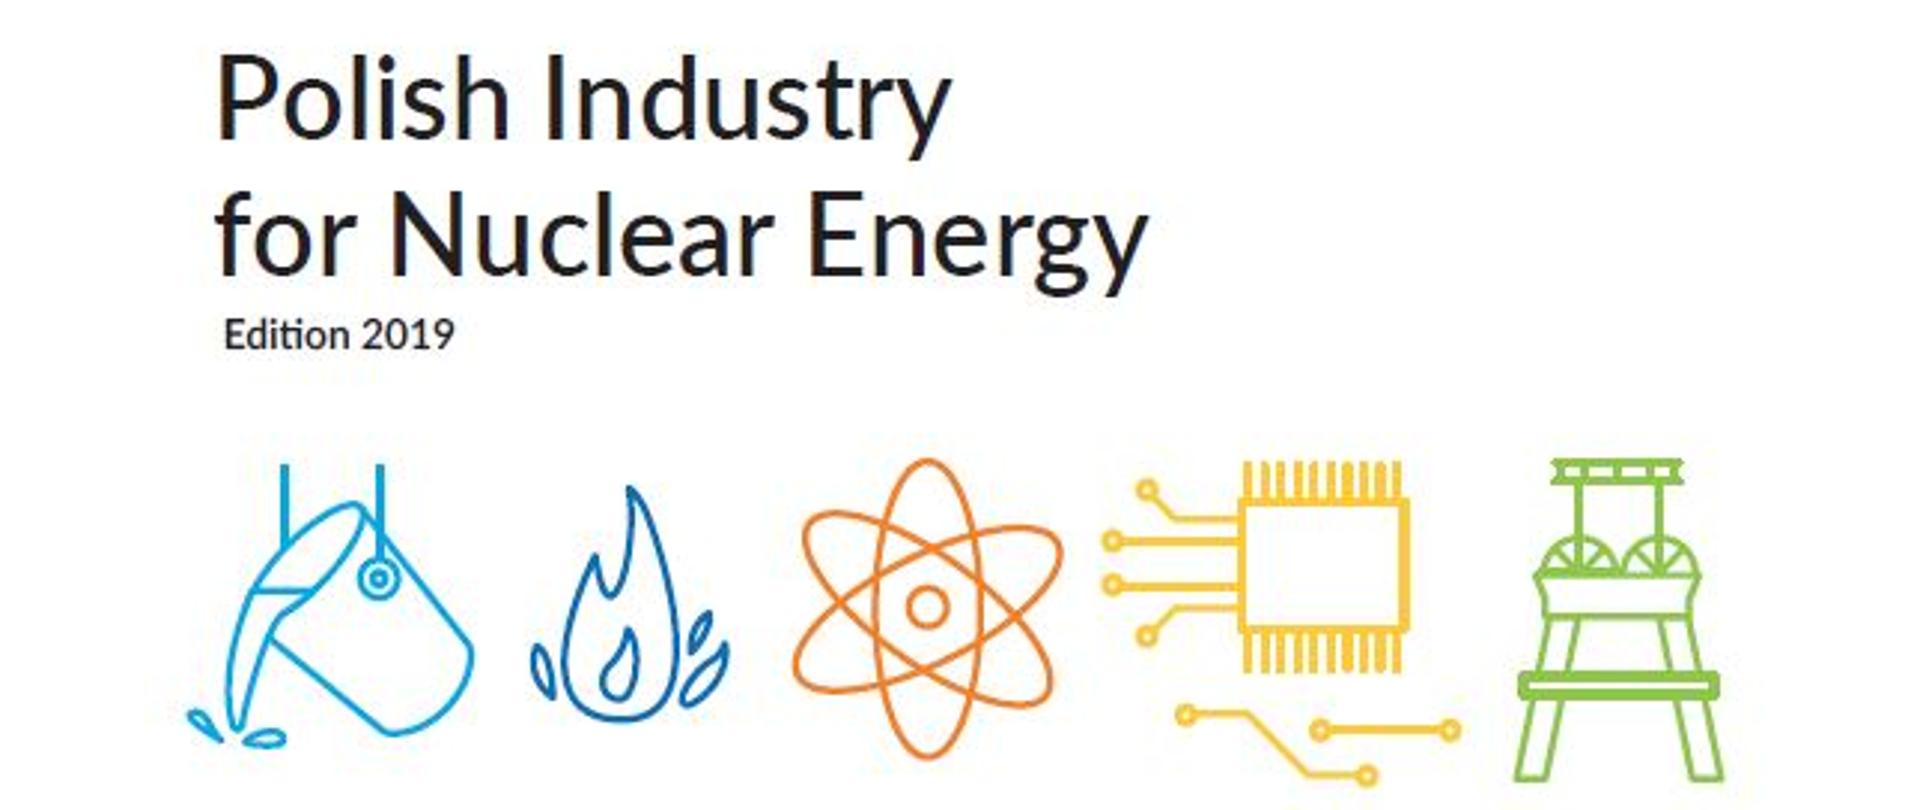 Katalog Polish Industry for Nuclear Energy.Edition 2019 